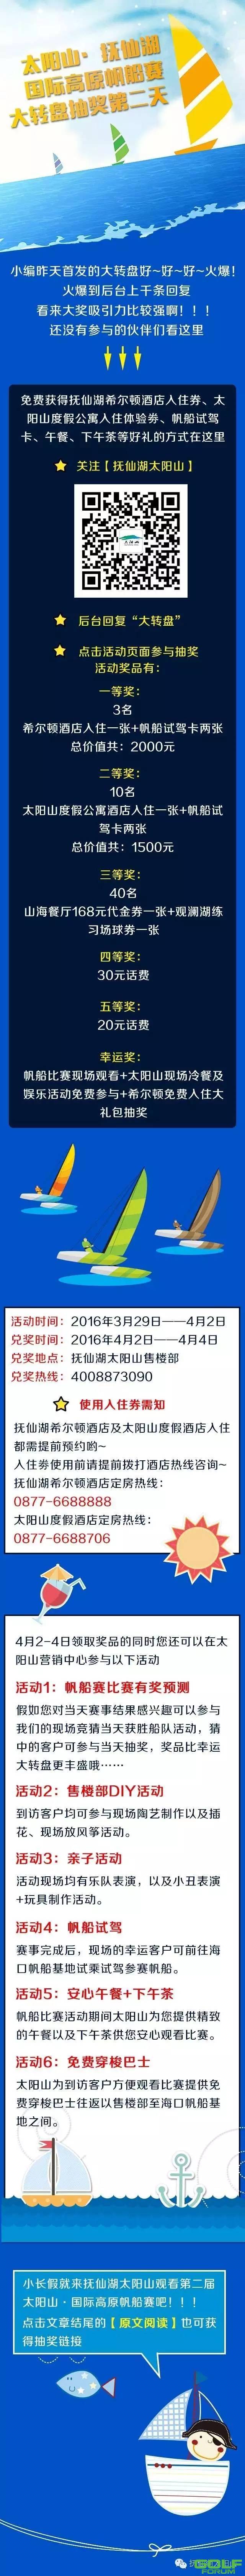 太阳山·抚仙湖国际高原帆船赛抽奖活动